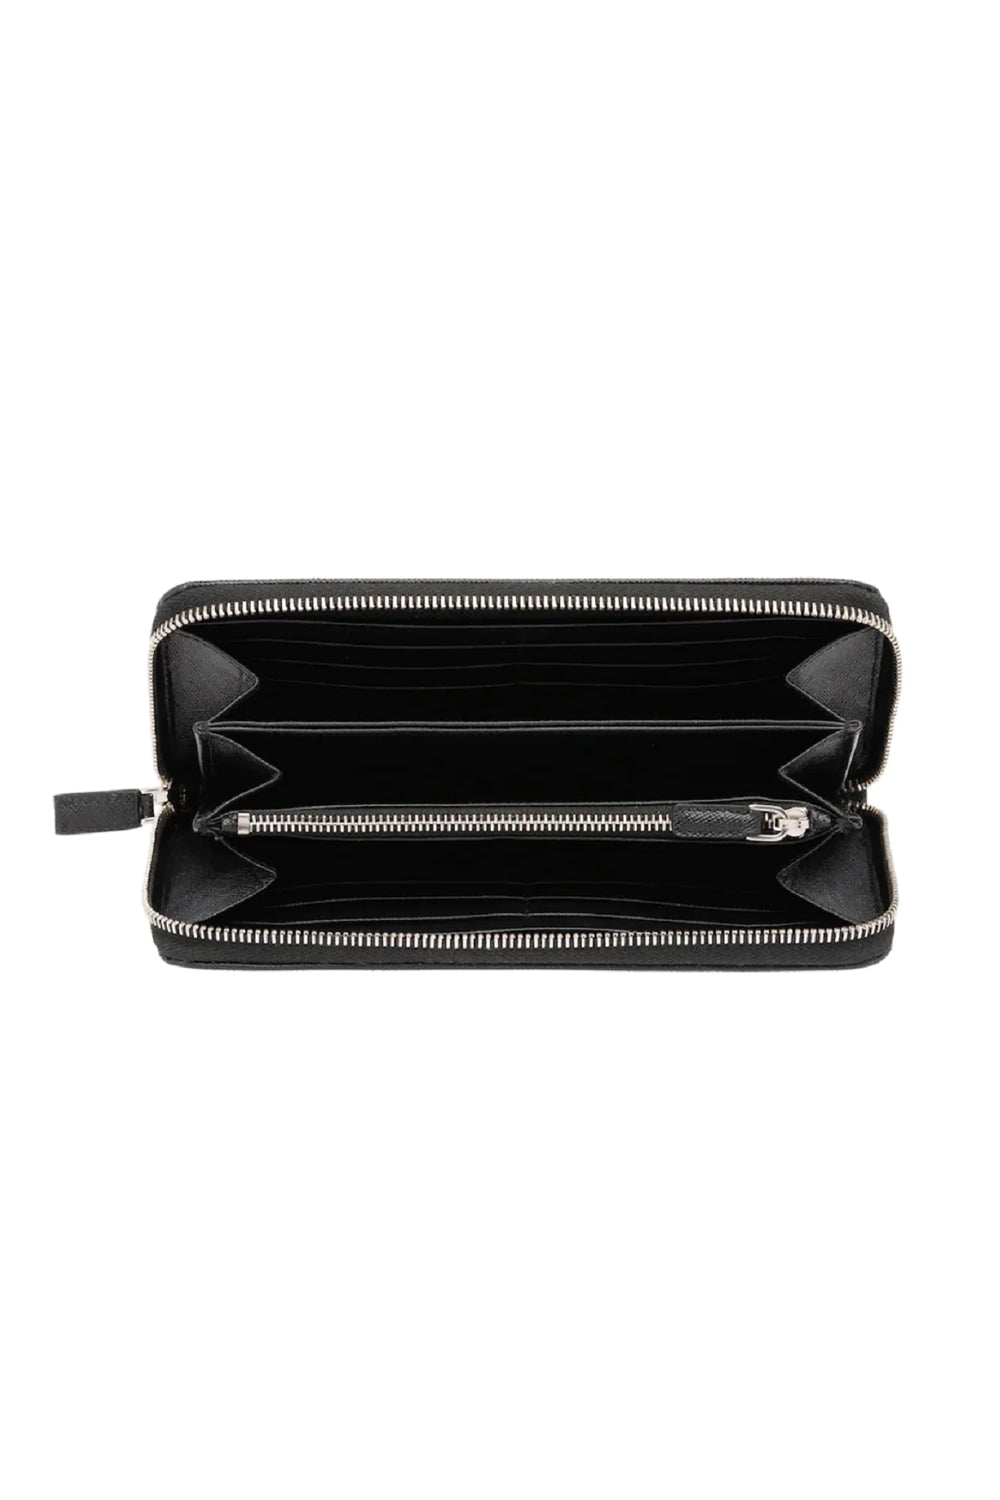 Prada Saffiano Leather Stripe Zip Around Wallet 